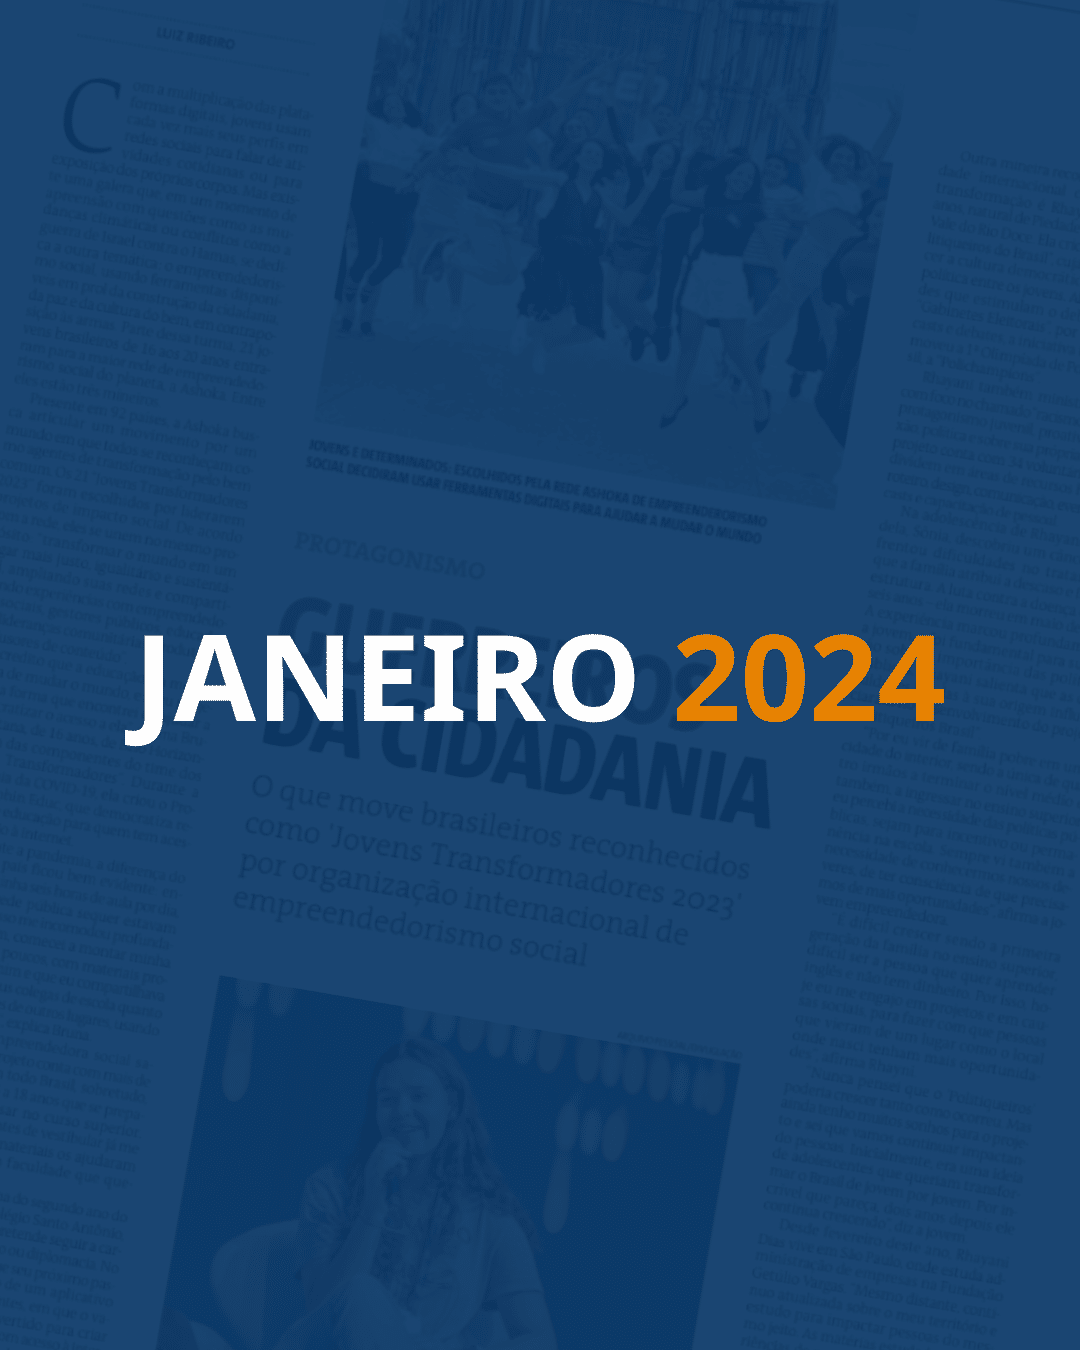 Em destaque, lê-se "JANEIRO" em branco e "2024" em laranja. Fundo com uma página de jornal e um filtro azul escuro por cima.